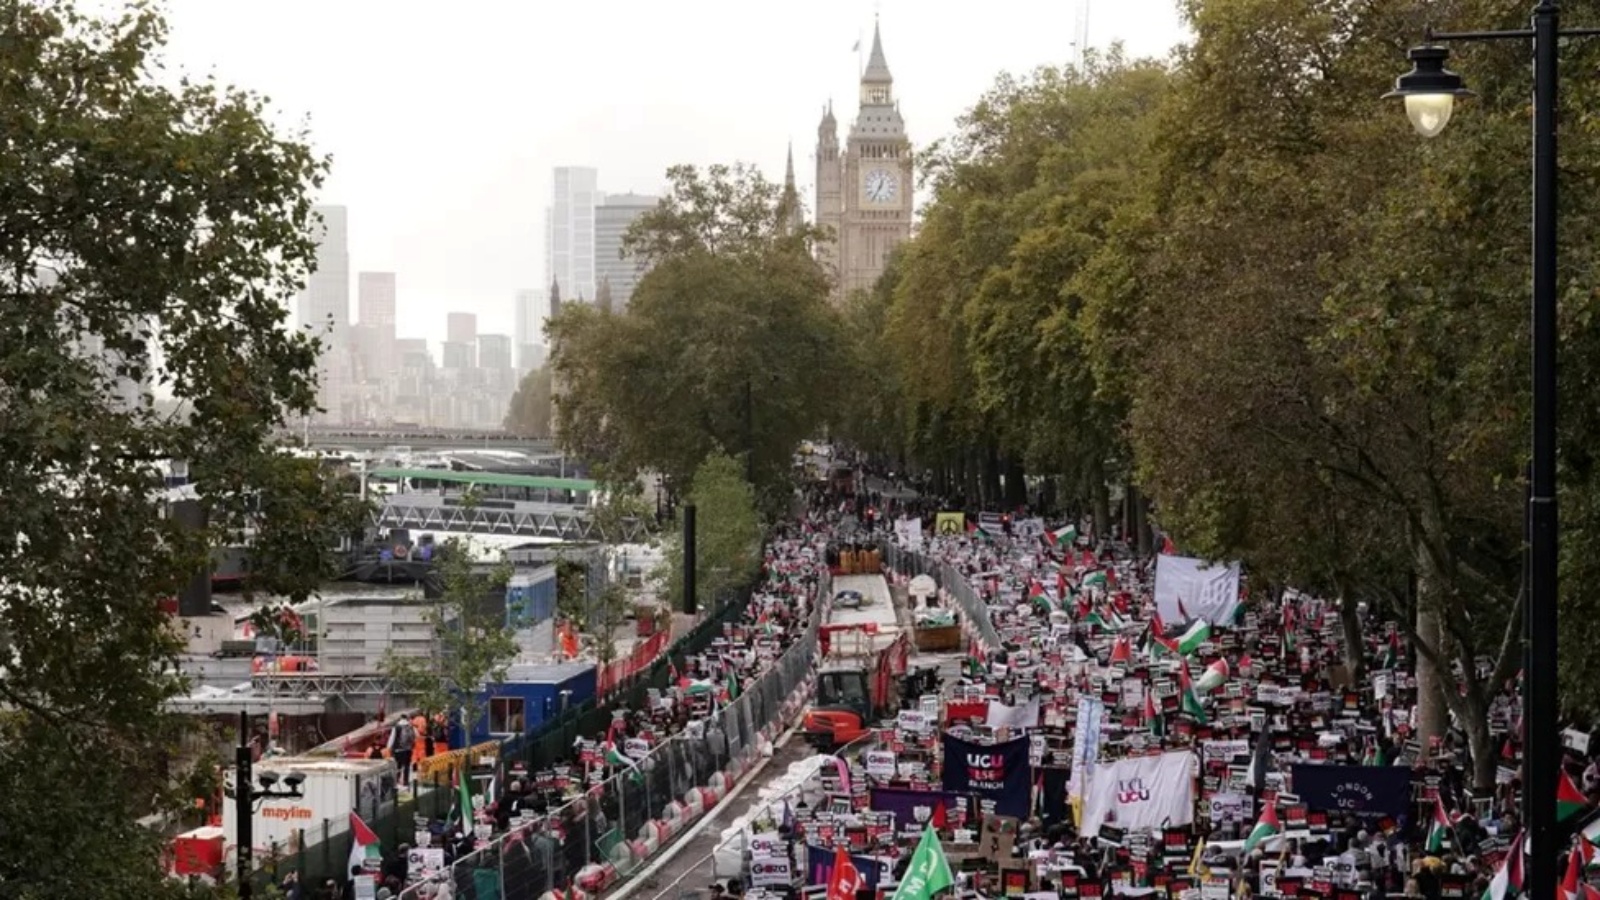 جانب من مسيرة لندن يوم السبت بمشاركة مائة الف شخص